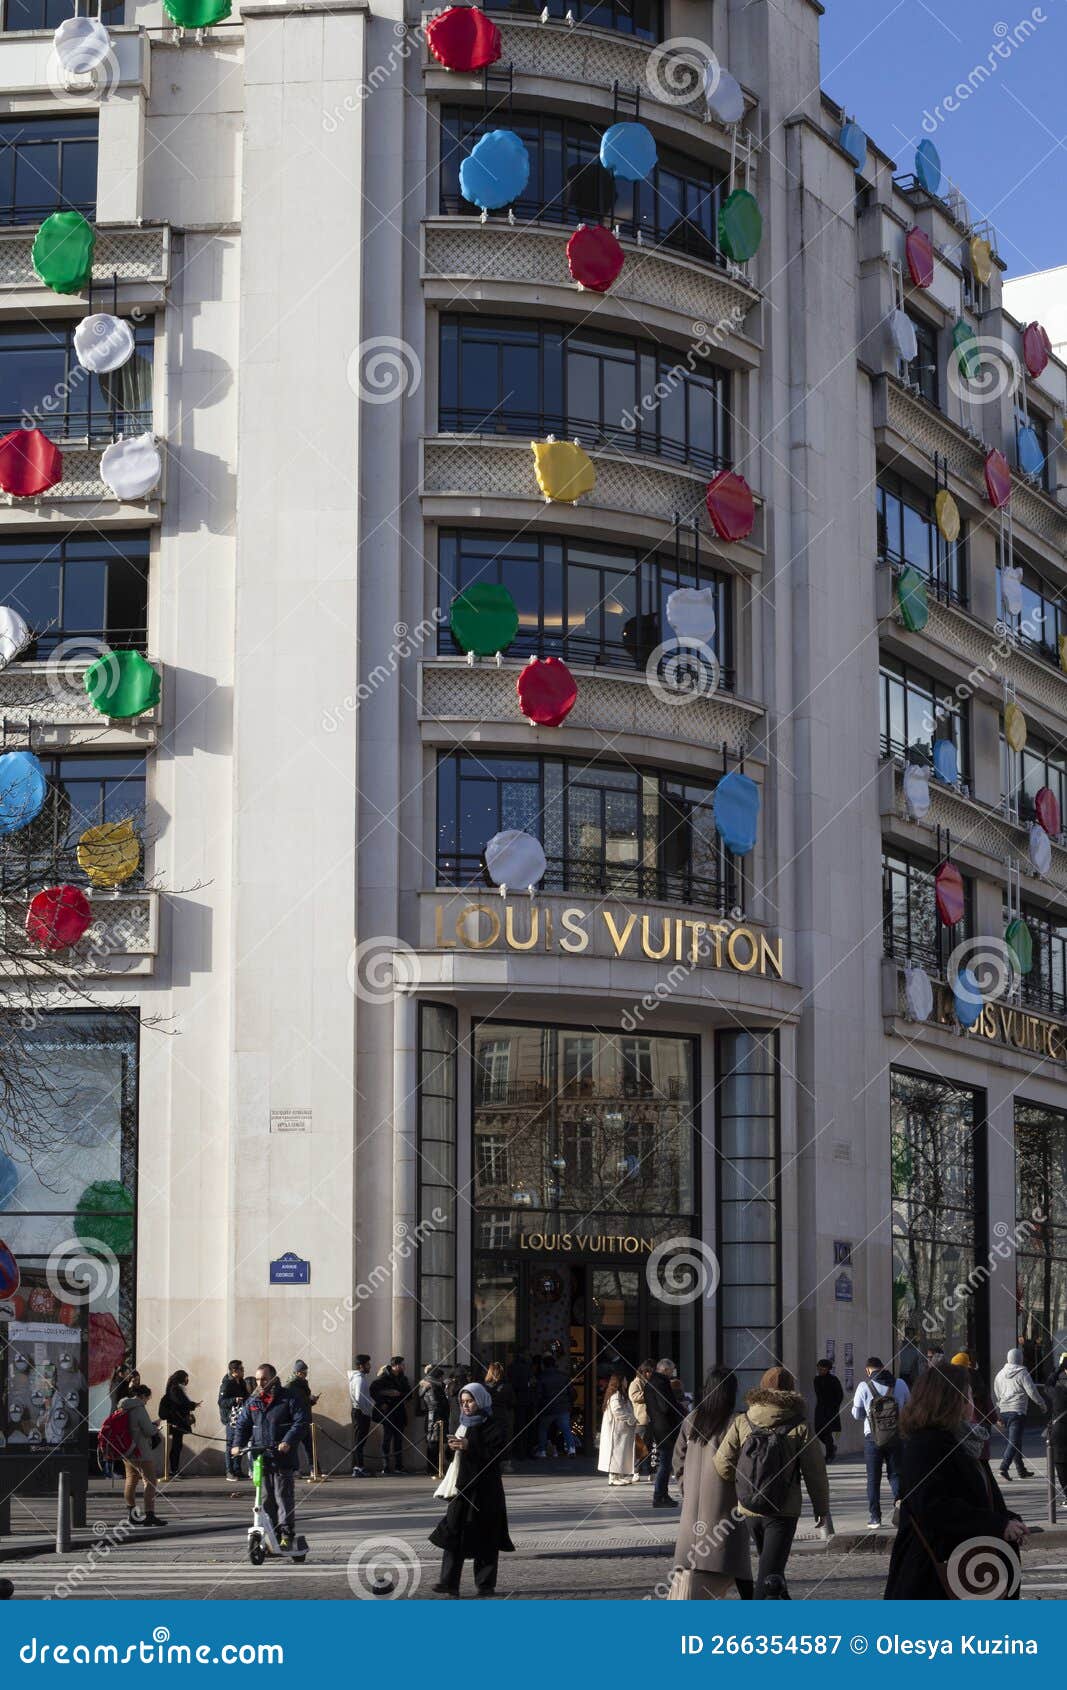 Huge Shopping Day at LOUIS VUITTON in Milan